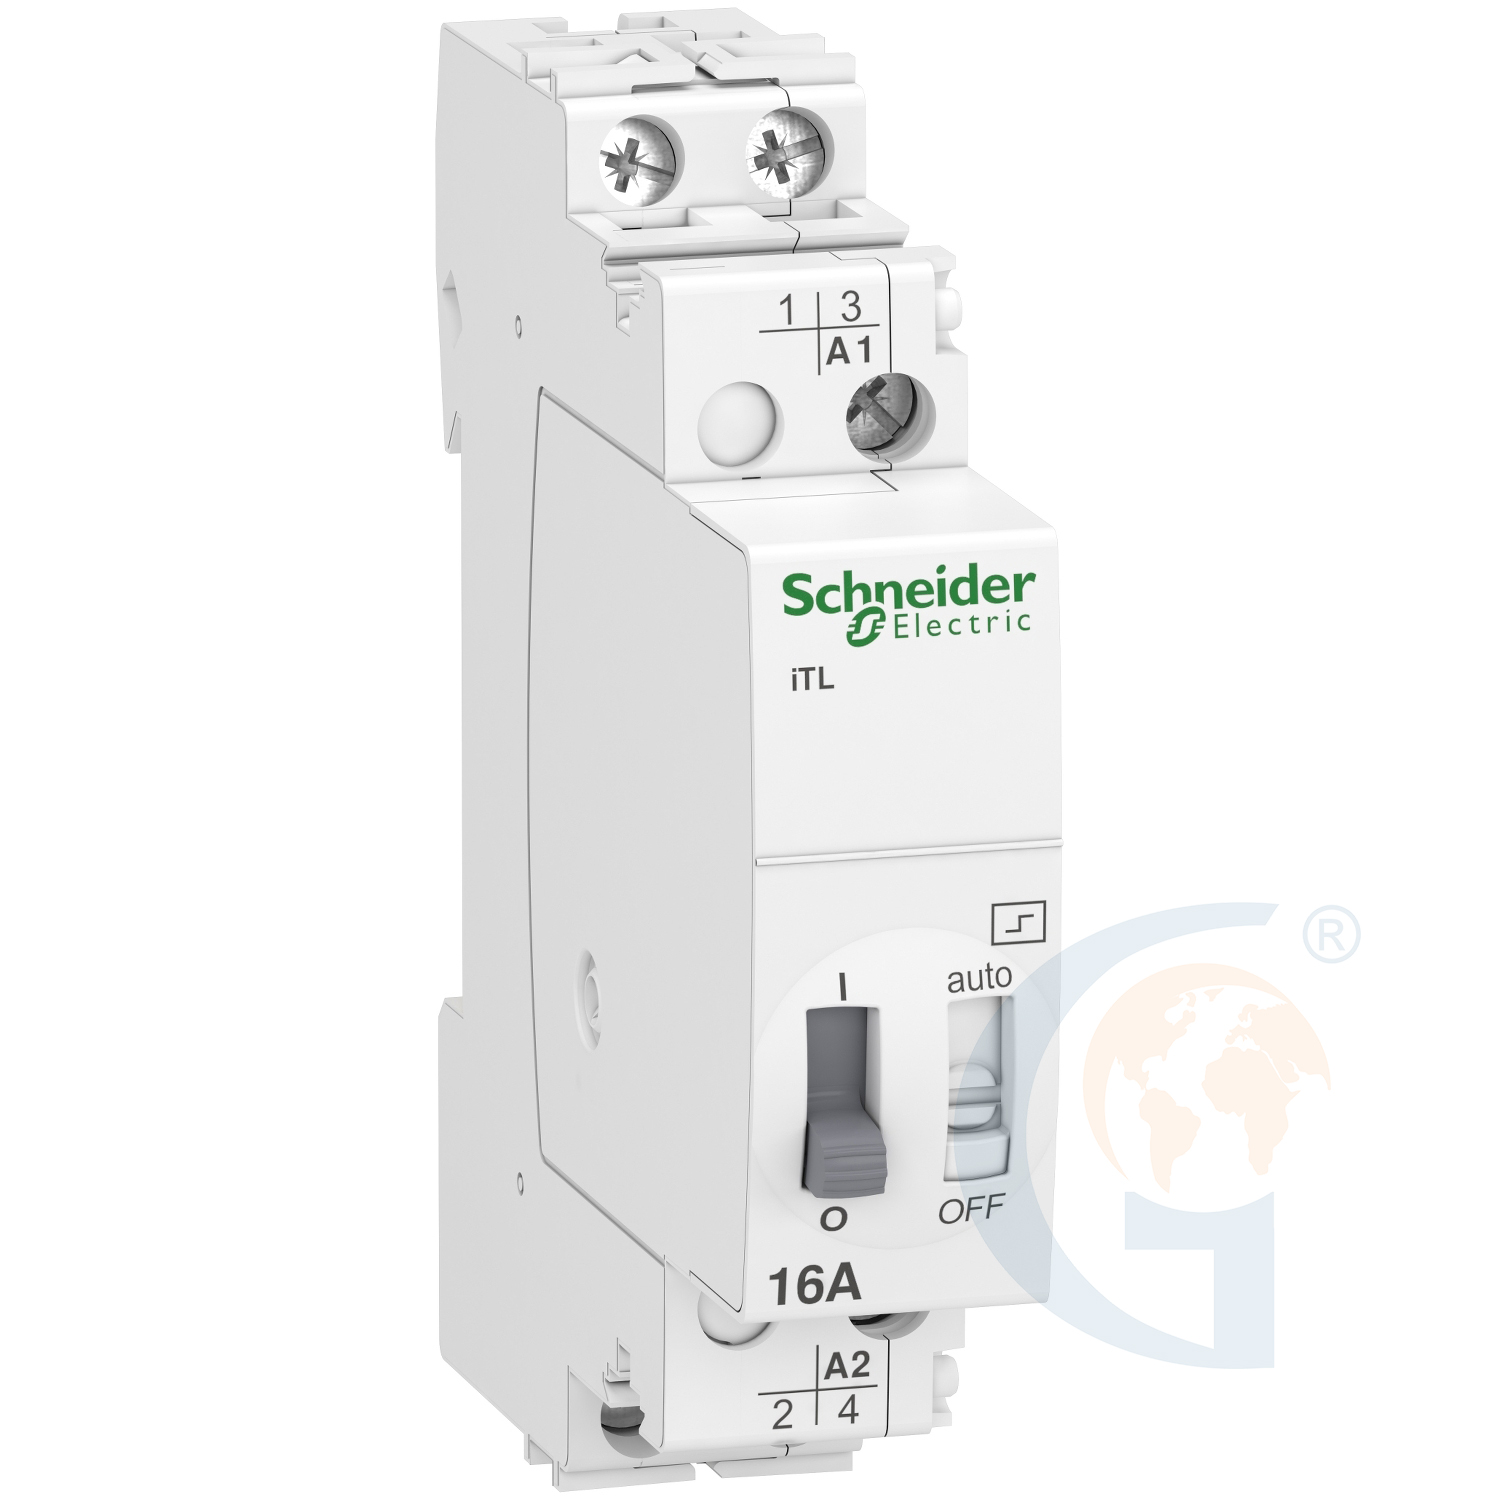 Schneider Electric A9C30812 IMPULSE RELAY ITL – 2P – 2 NO – 16A – COIL 110 VDC – 230…240 VAC 50/60HZ https://gesrepair.com/wp-content/uploads/2020/Schneider/Schneider_Electric_A9C30812_.jpg